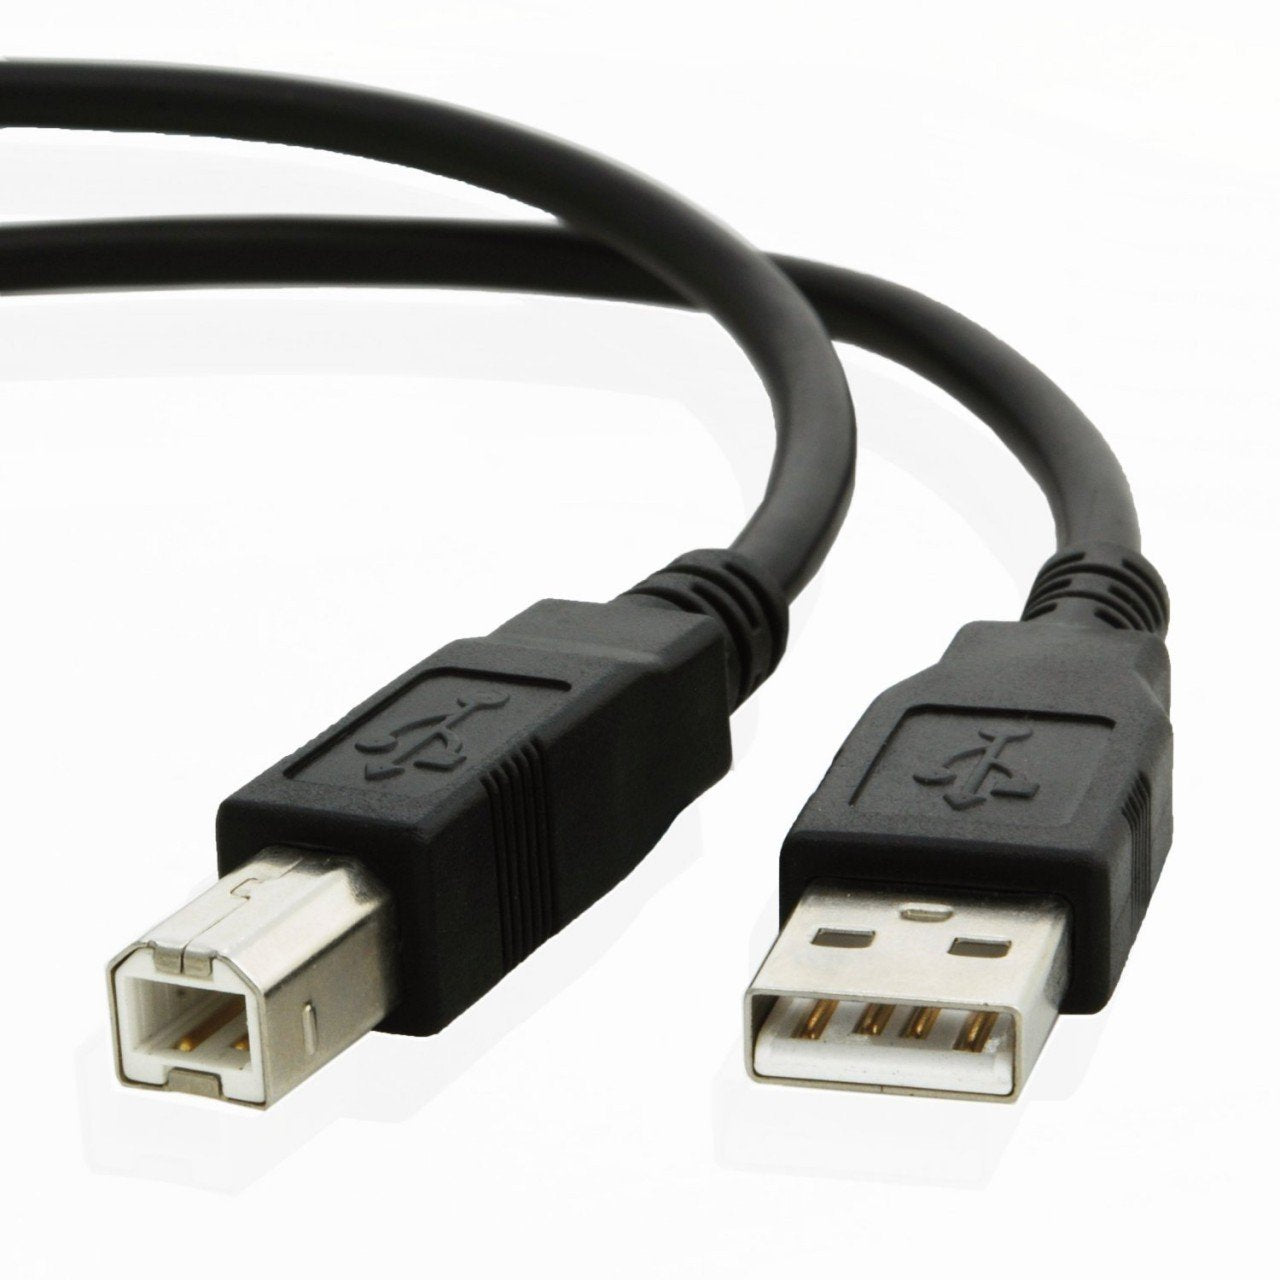 USB cable for Hp DESKJET 2655